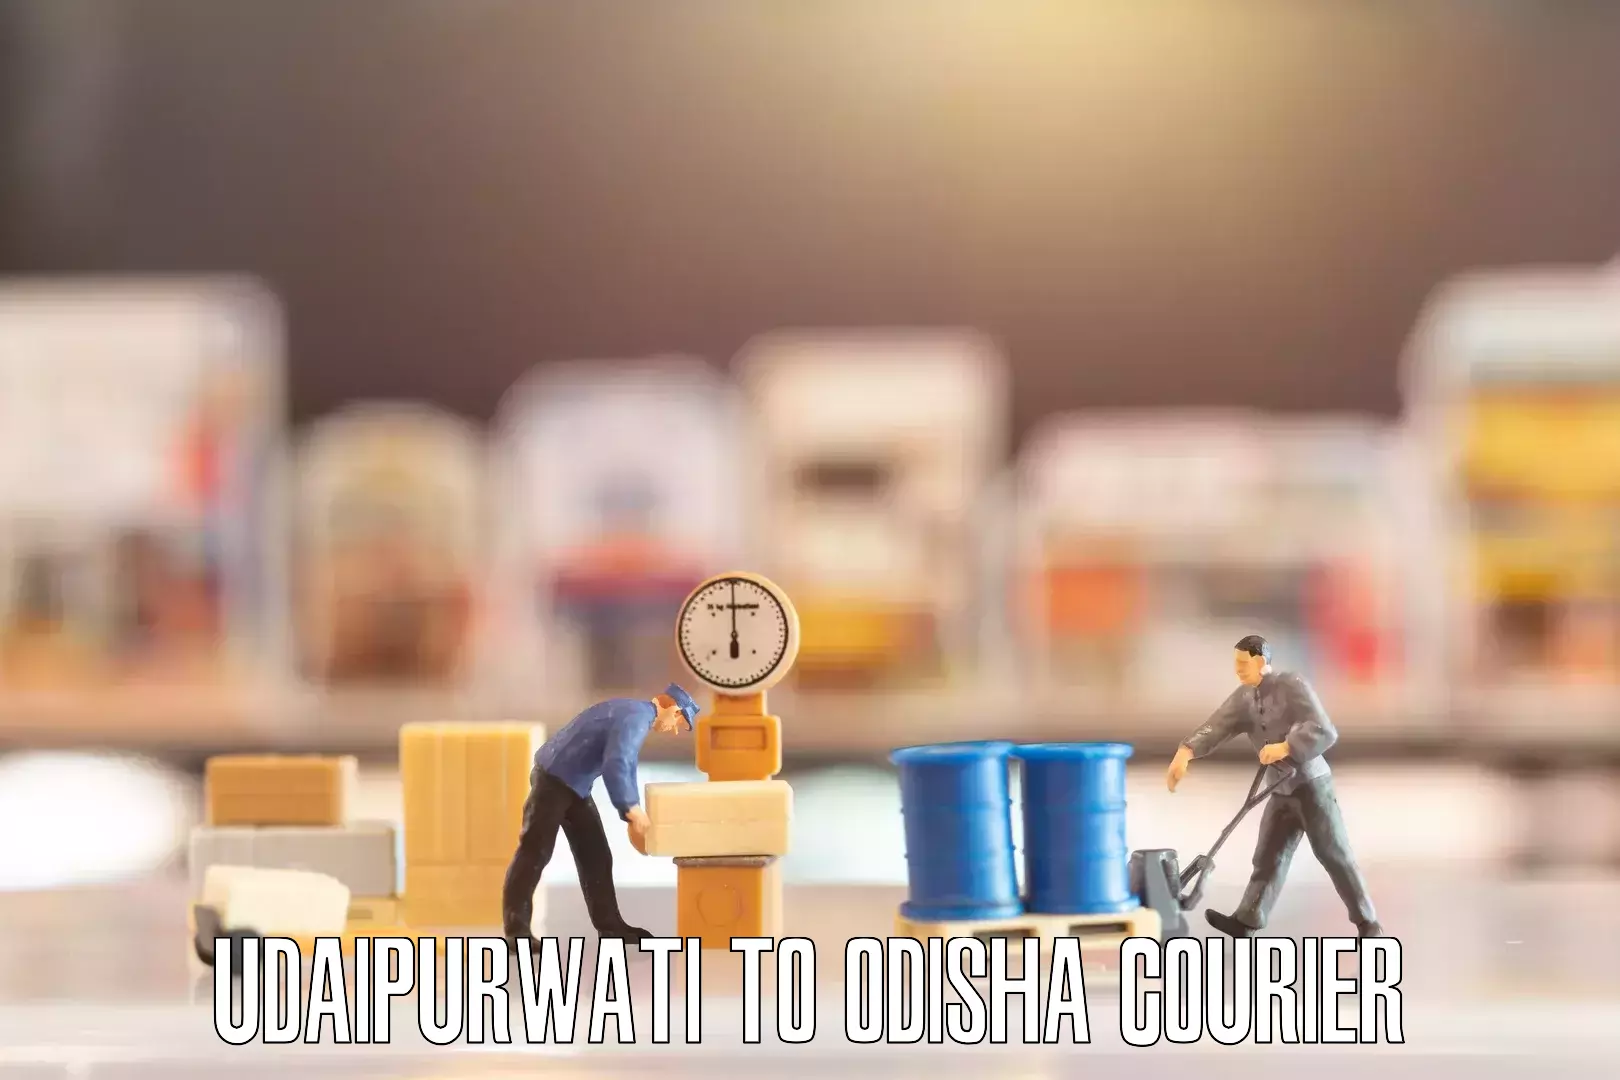 Reliable furniture movers Udaipurwati to Odisha